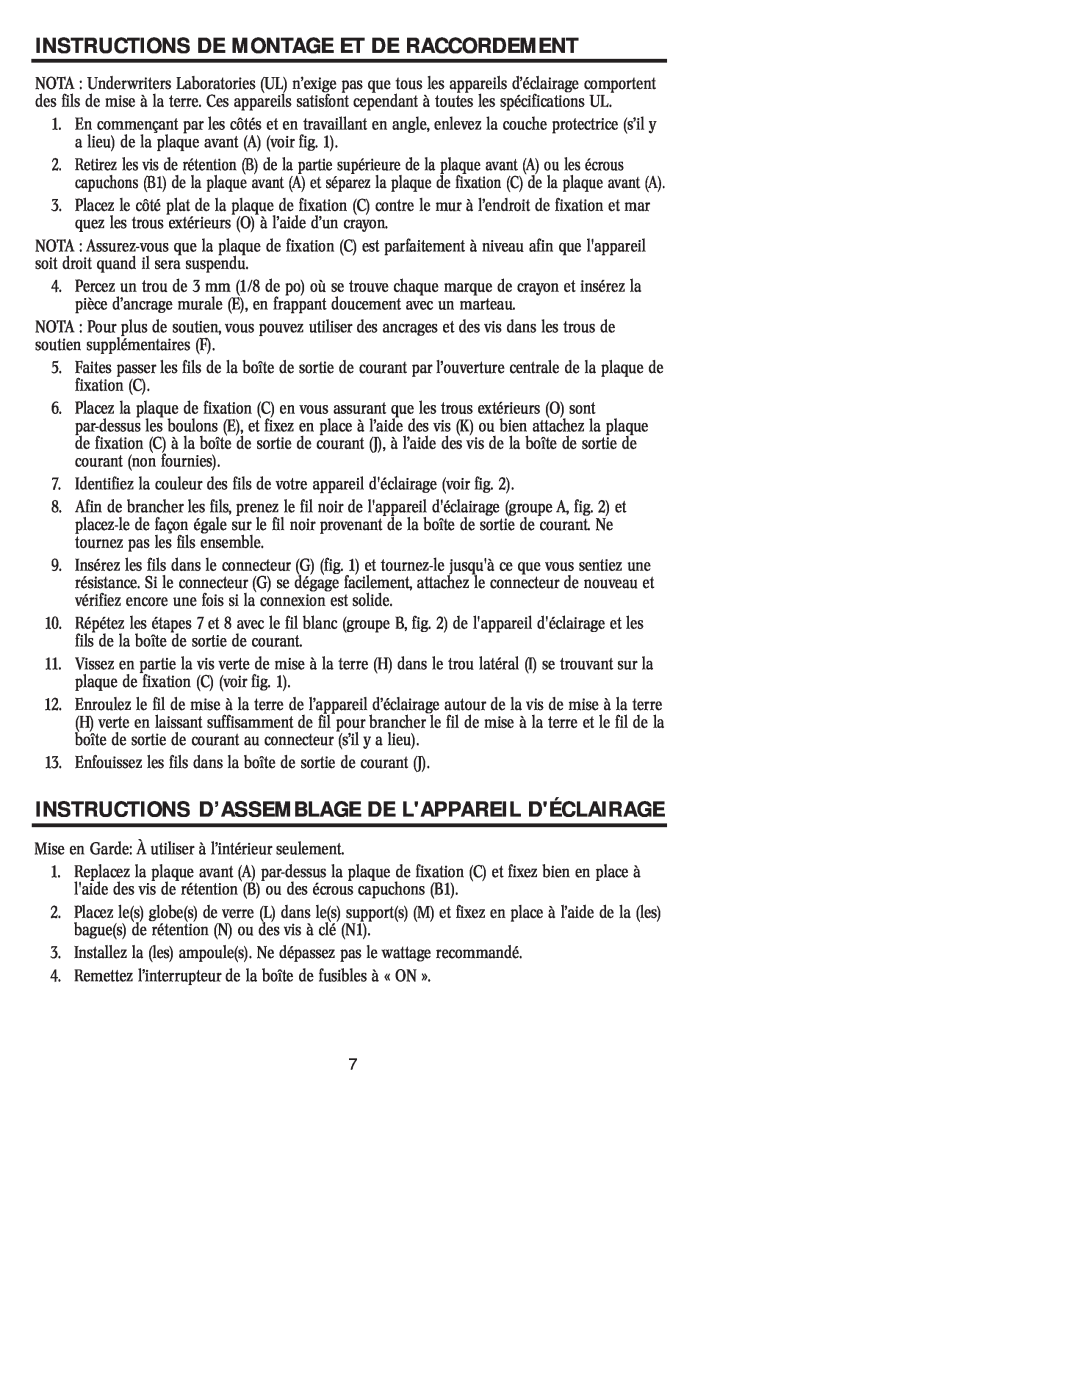 Westinghouse 72404, W-118 Instructions D’Assemblage De Lappareil Déclairage, Instructions De Montage Et De Raccordement 